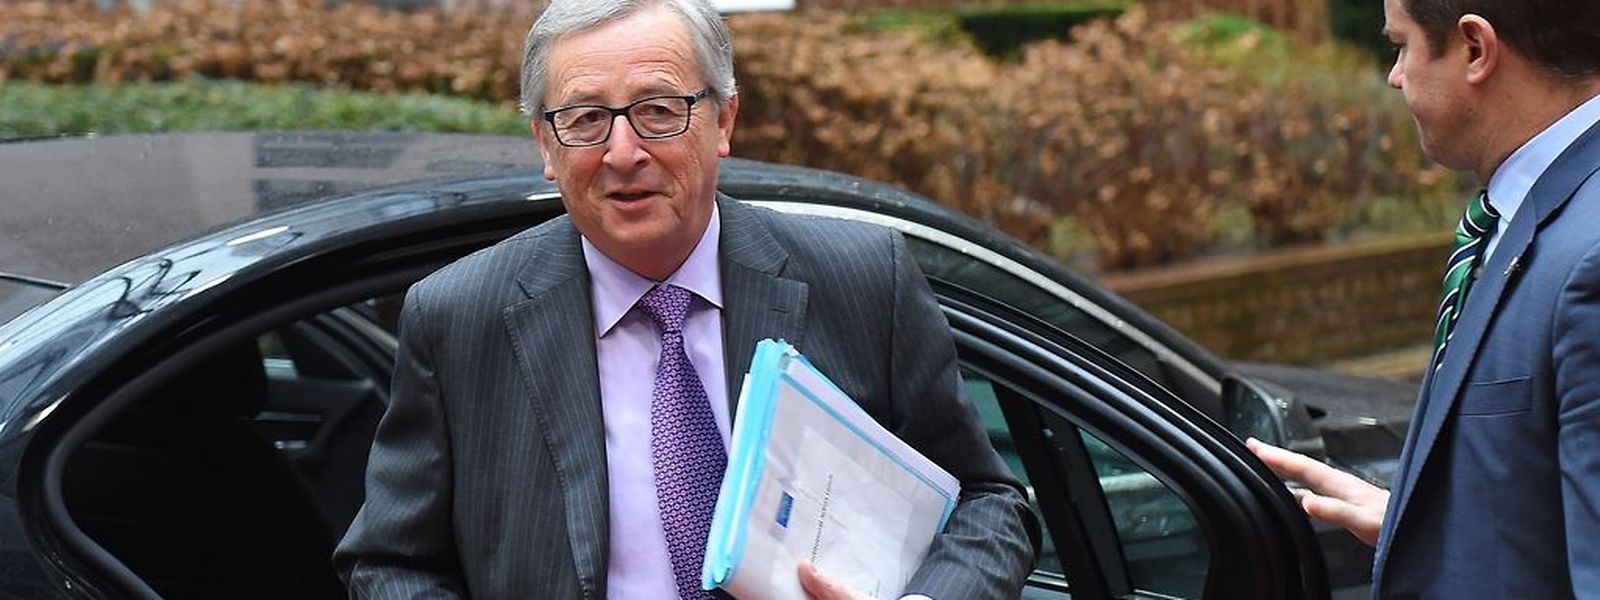 EU-Kommissionspräsident Jean-Claude Juncker könnte durch die Einsetzung eines Untersuchungsausschusses beschädigt werden.